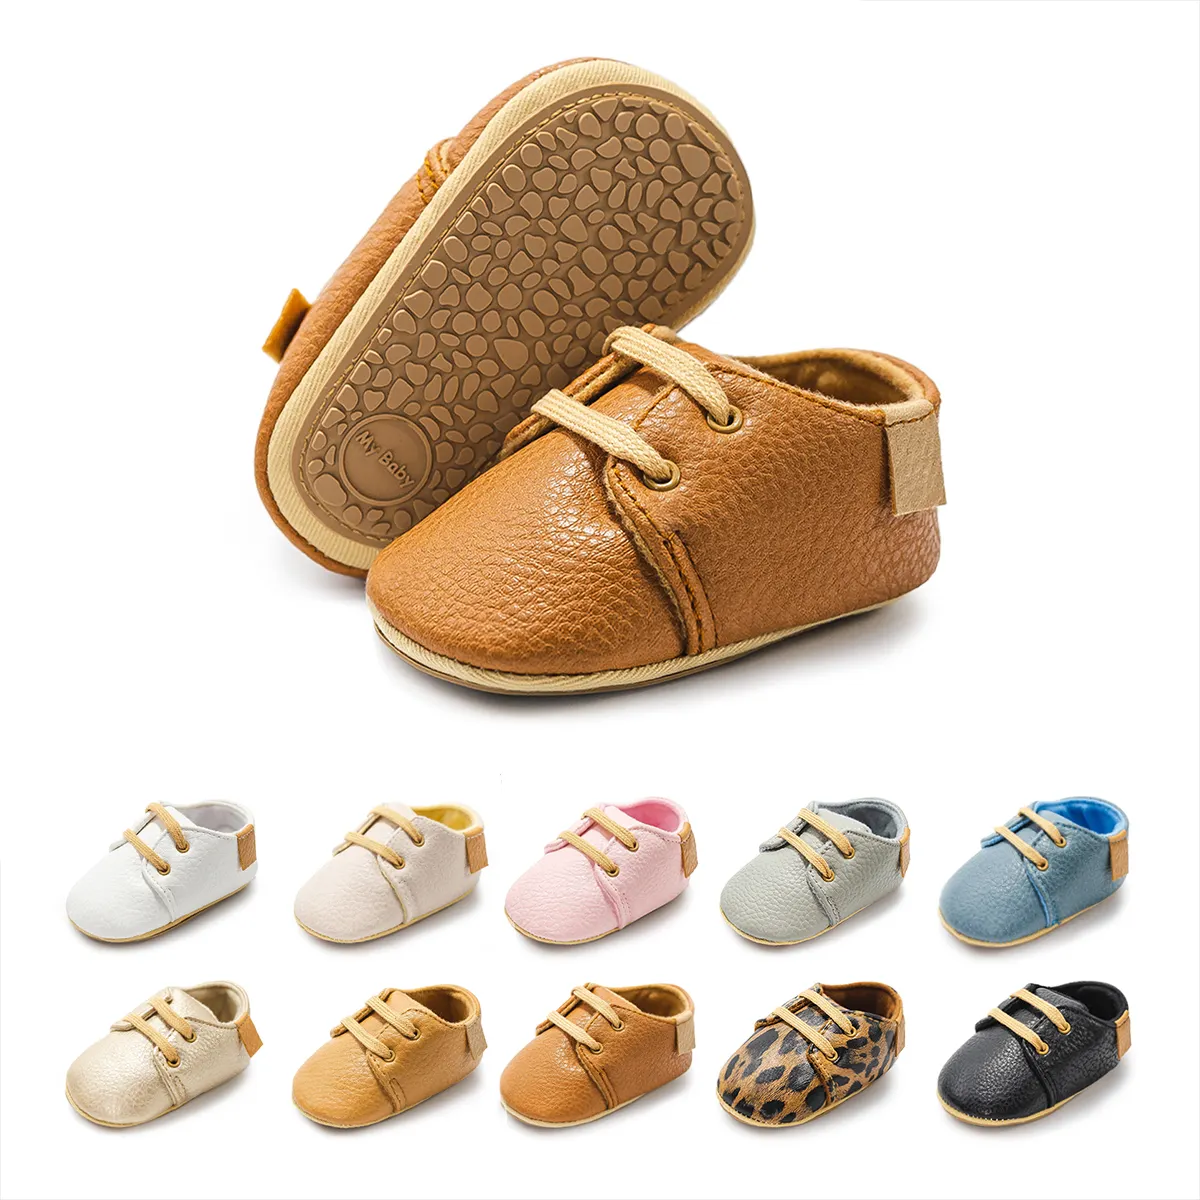 Sapatos de bebê de 0-18 meses, sola de borracha antiderrapante para festas ao ar livre, sapatos de bebê de alta qualidade para bebês